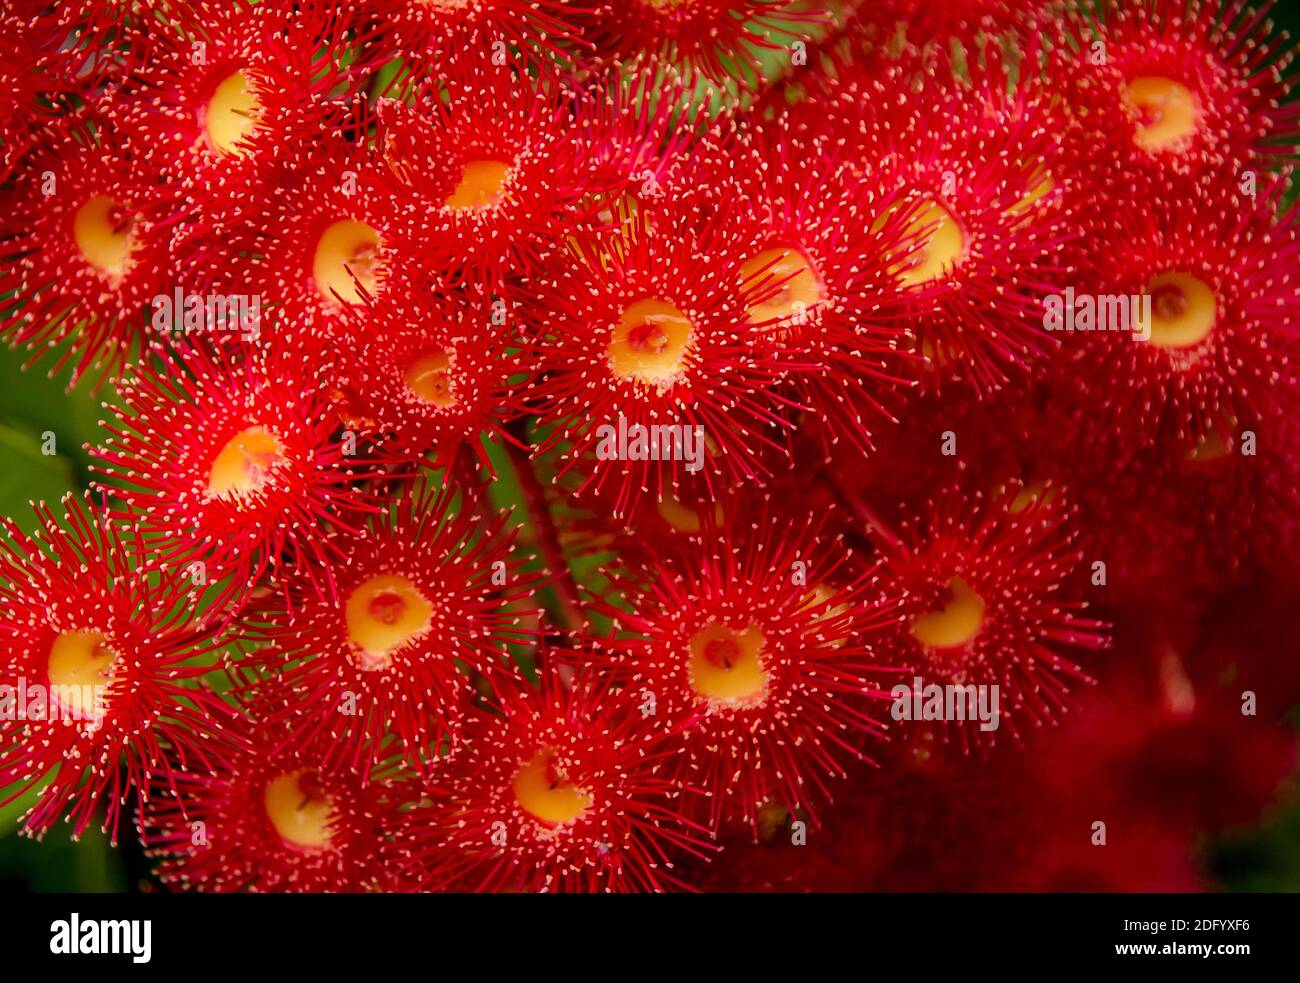 Sehr leuchtend rot blühende Zahnfleischblüten (Corymbia ficifolia). Keine  Blütenblätter, alles Staubgefäße. Gummibaum im privaten Garten in  Queensland, Australien Stockfotografie - Alamy